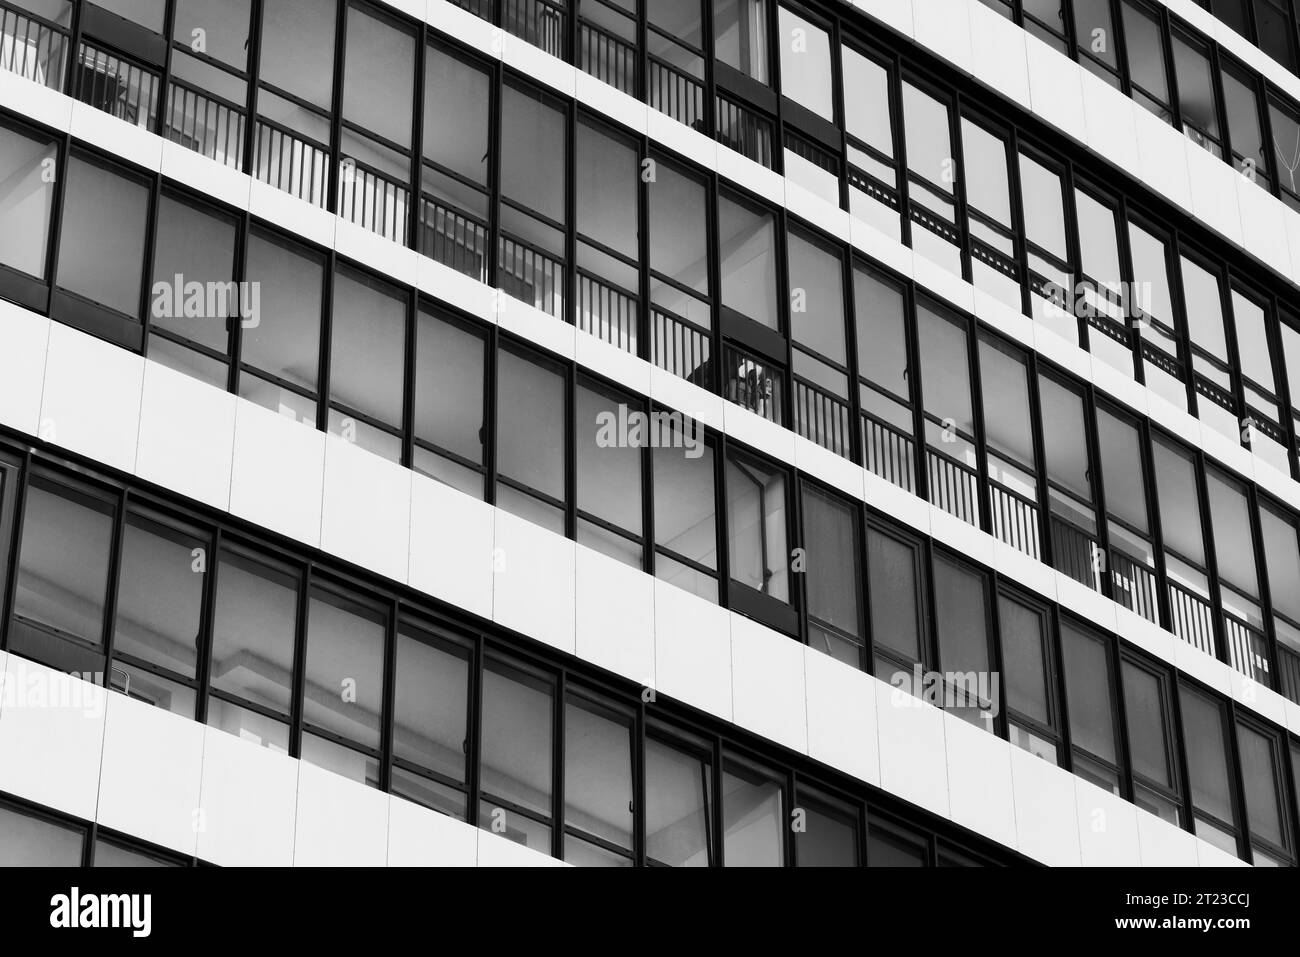 Fond d'architecture moderne abstraite, mur de maison blanche avec des fenêtres en rangées. Photo noir et blanc Banque D'Images